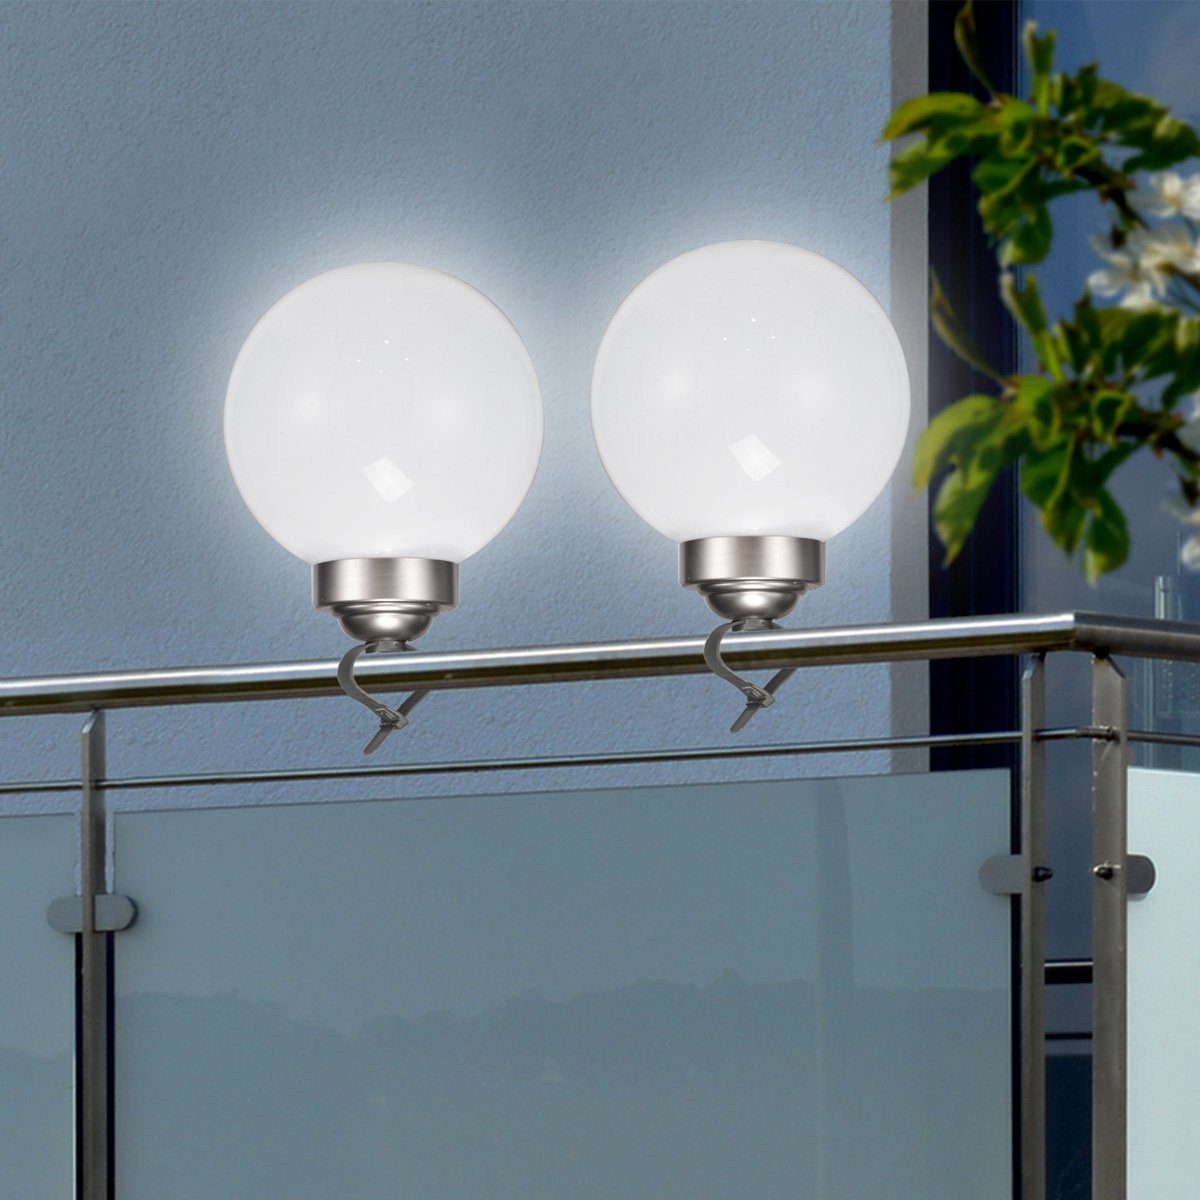 MARELIDA LED Kugelleuchte LED Solar Kugellampe 2in1 4 kaltweiß D: 15cm inkl. Clip und Erdspieß, LED Classic, kaltweiss (5300K bis 6000K) | Alle Lampen